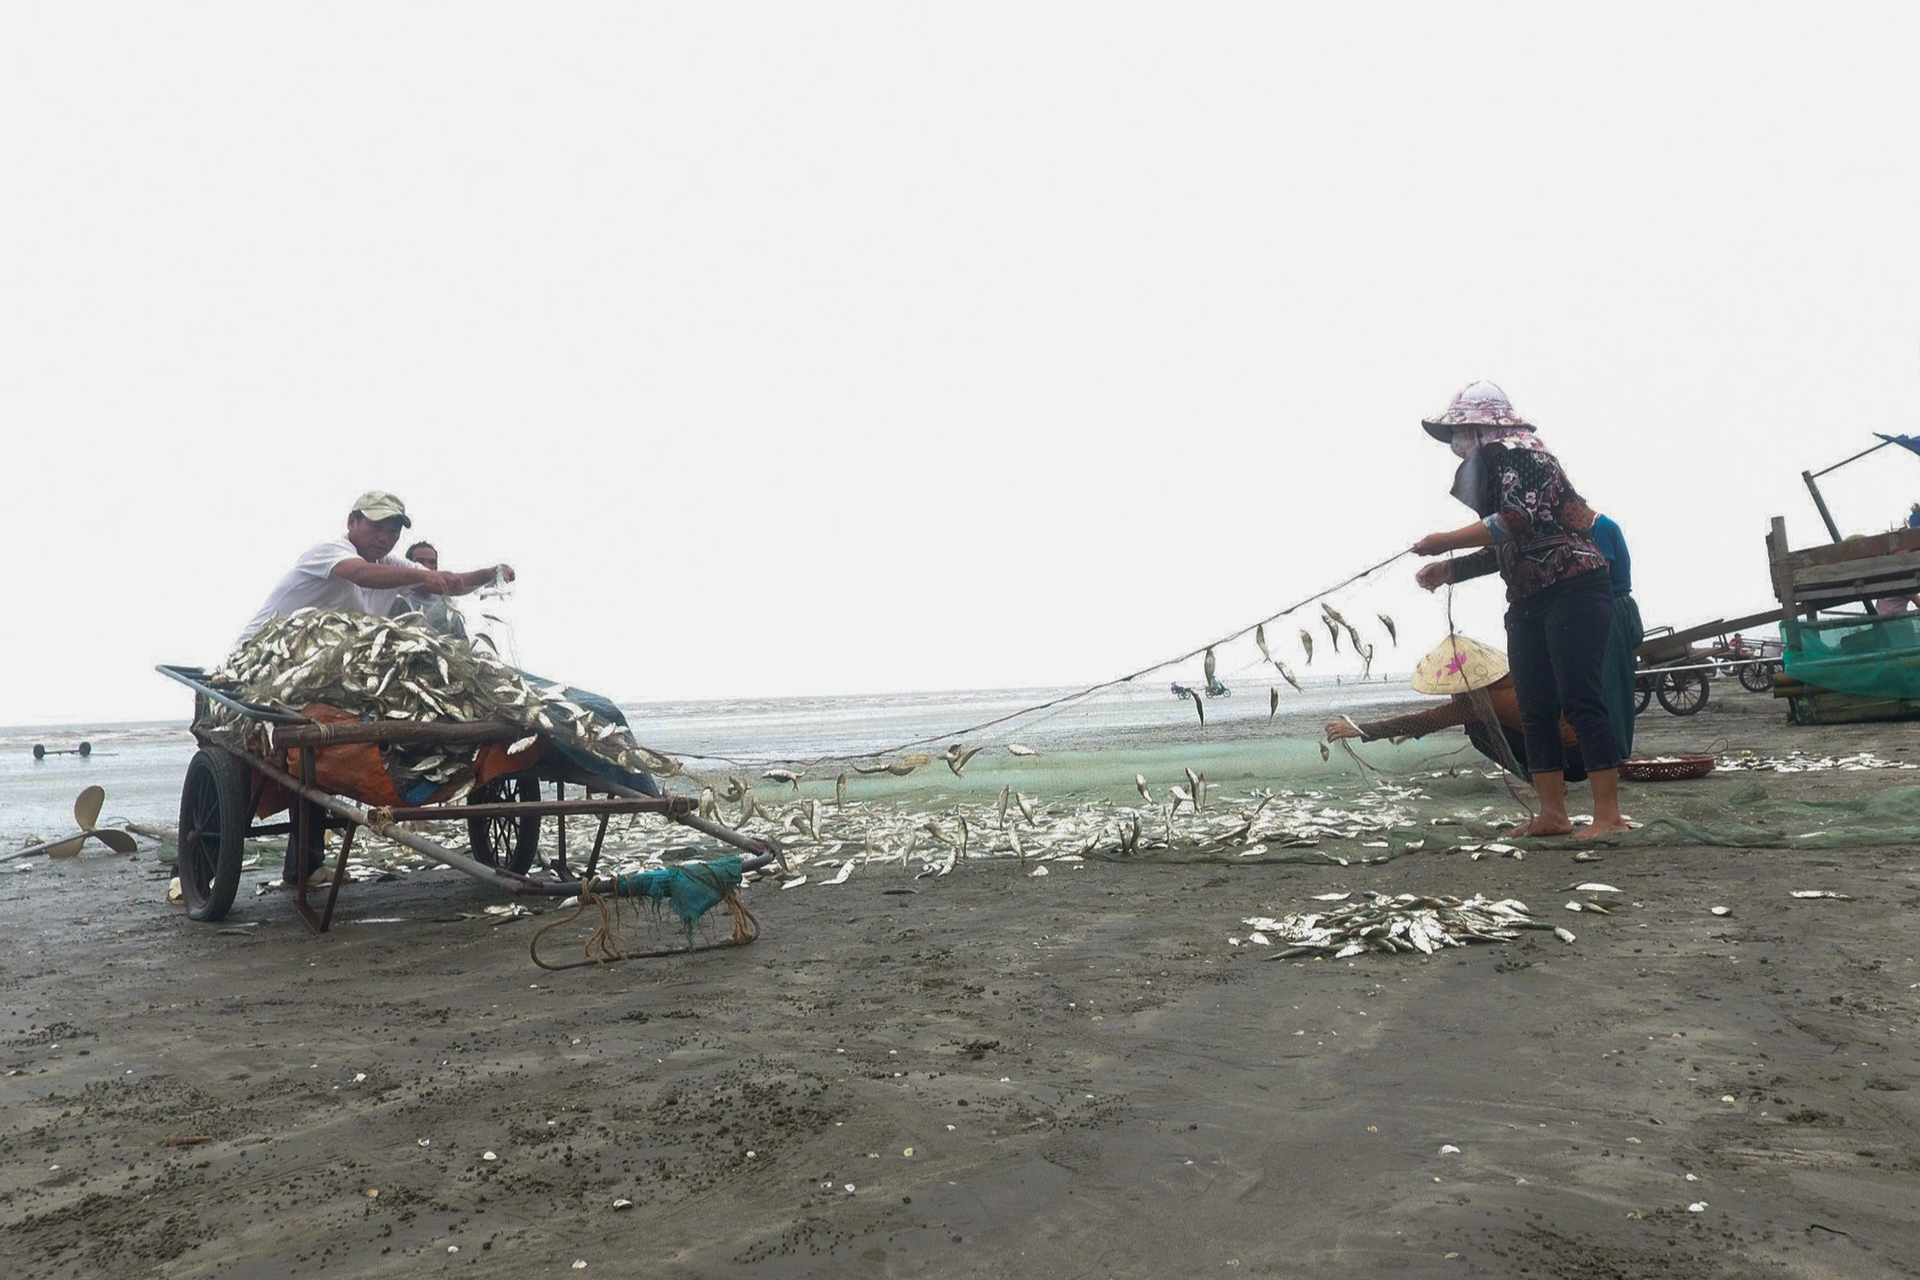 Phụ nữ làng biển mướt mồ hồi nướng cá bên bếp lửa giữa trưa 39 độ C - 2